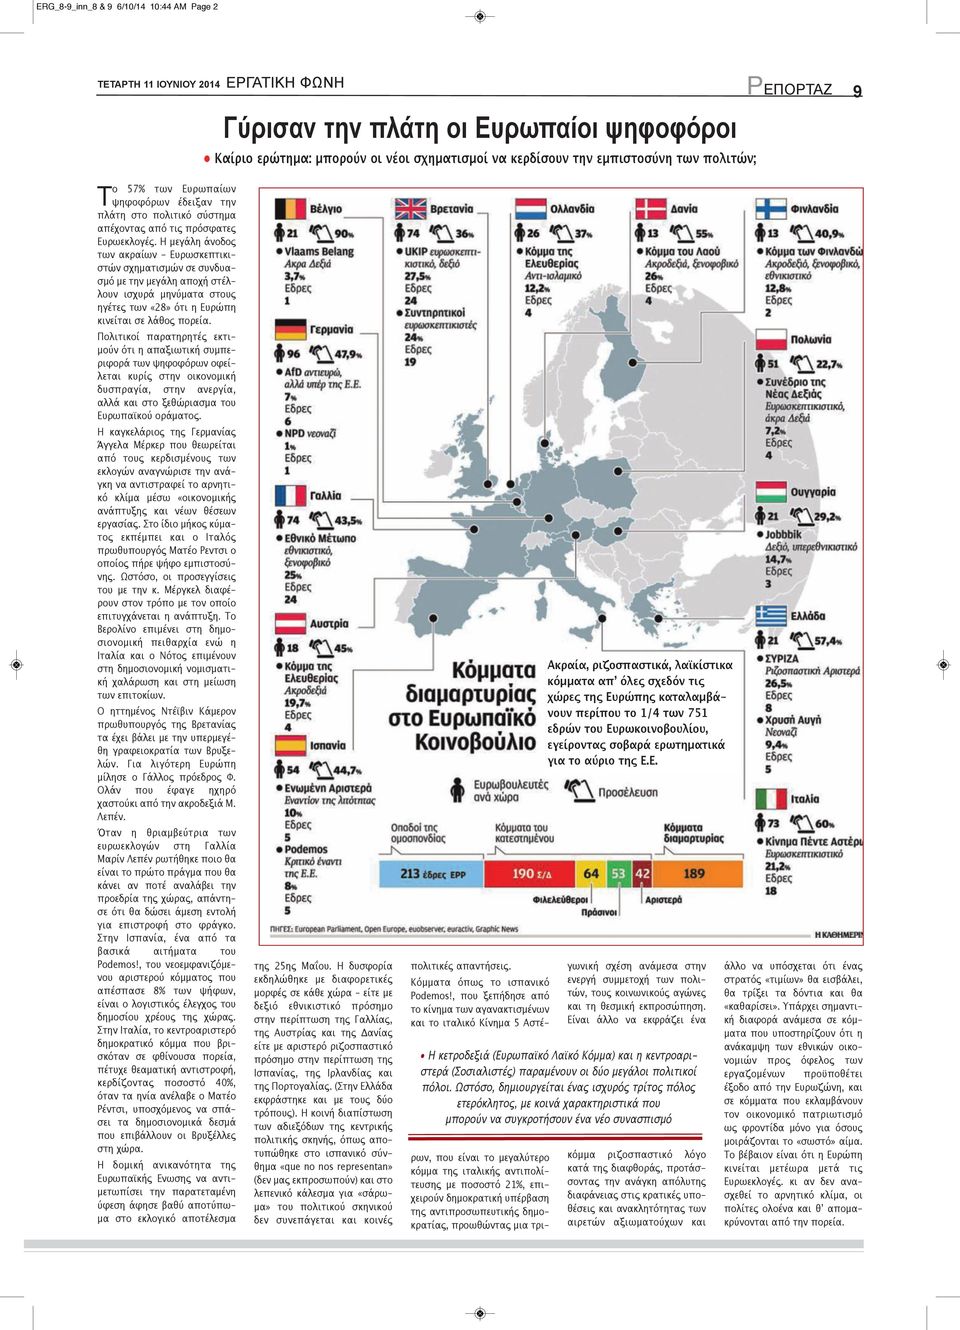 Η μεγάλη άνοδος των ακραίων - Ευρωσκεπτικιστών σχηματισμών σε συνδυασμό με την μεγάλη αποχή στέλλουν ισχυρά μηνύματα στους ηγέτες των «28» ότι η Ευρώπη κινείται σε λάθος πορεία.